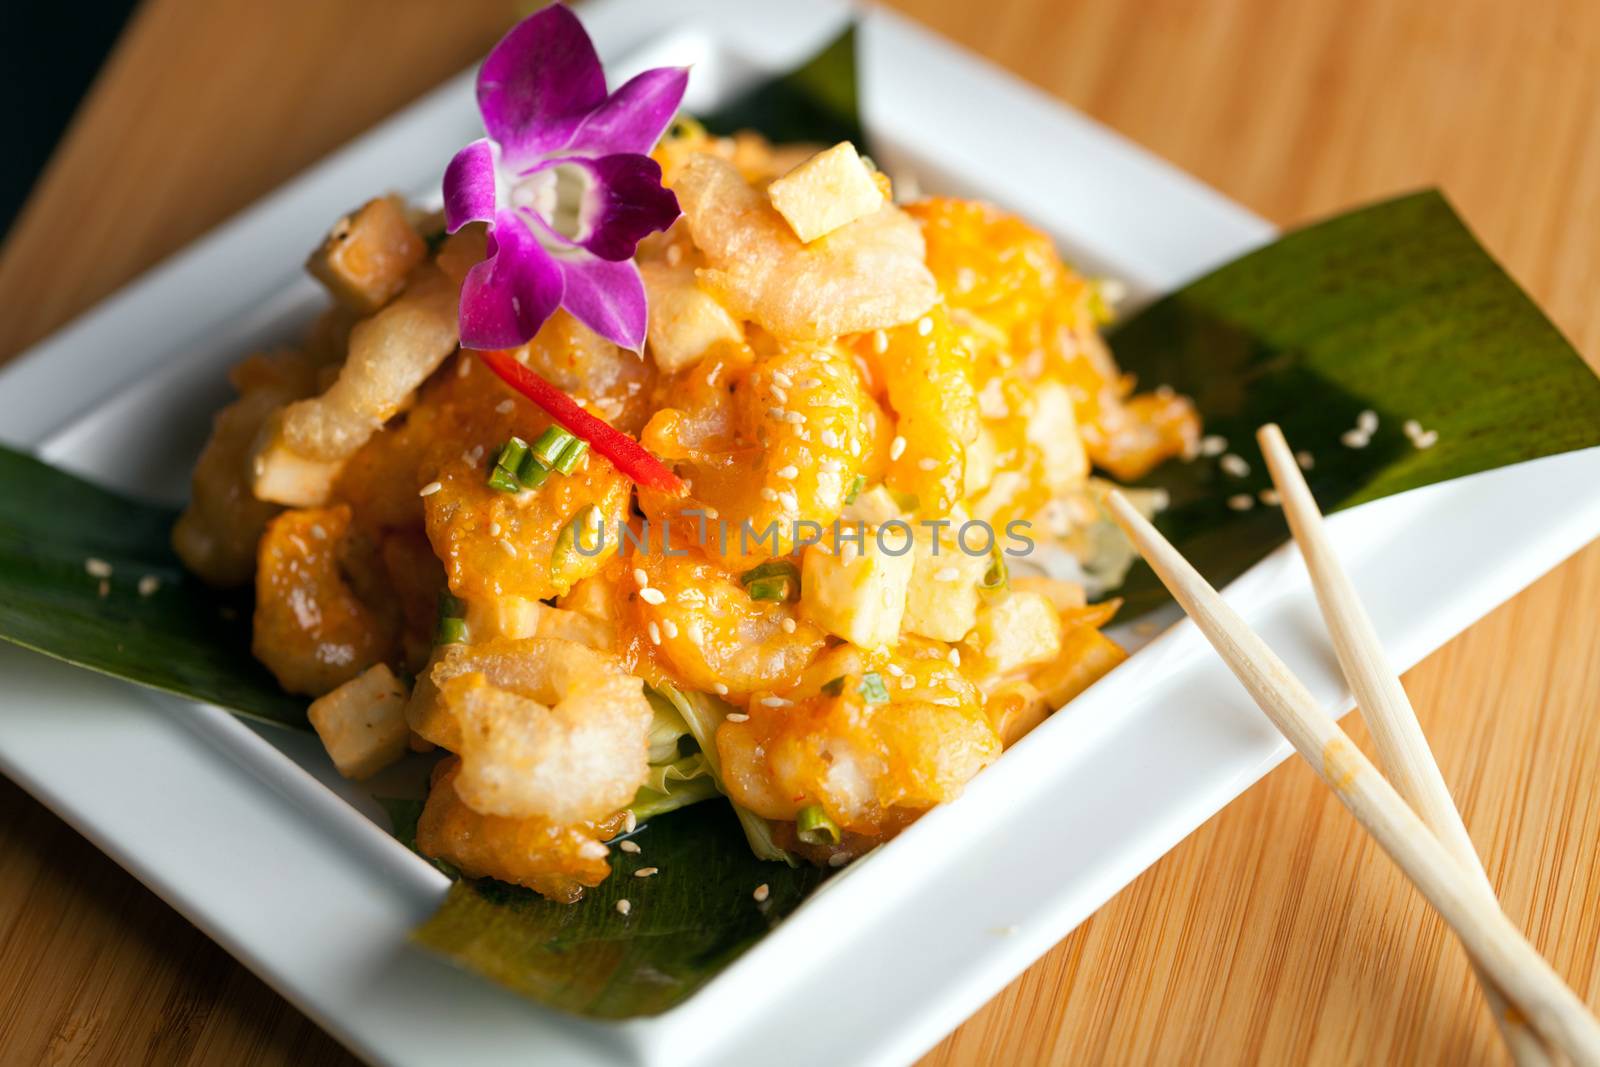 Tasty Tempura Thai Shrimp Plate by graficallyminded